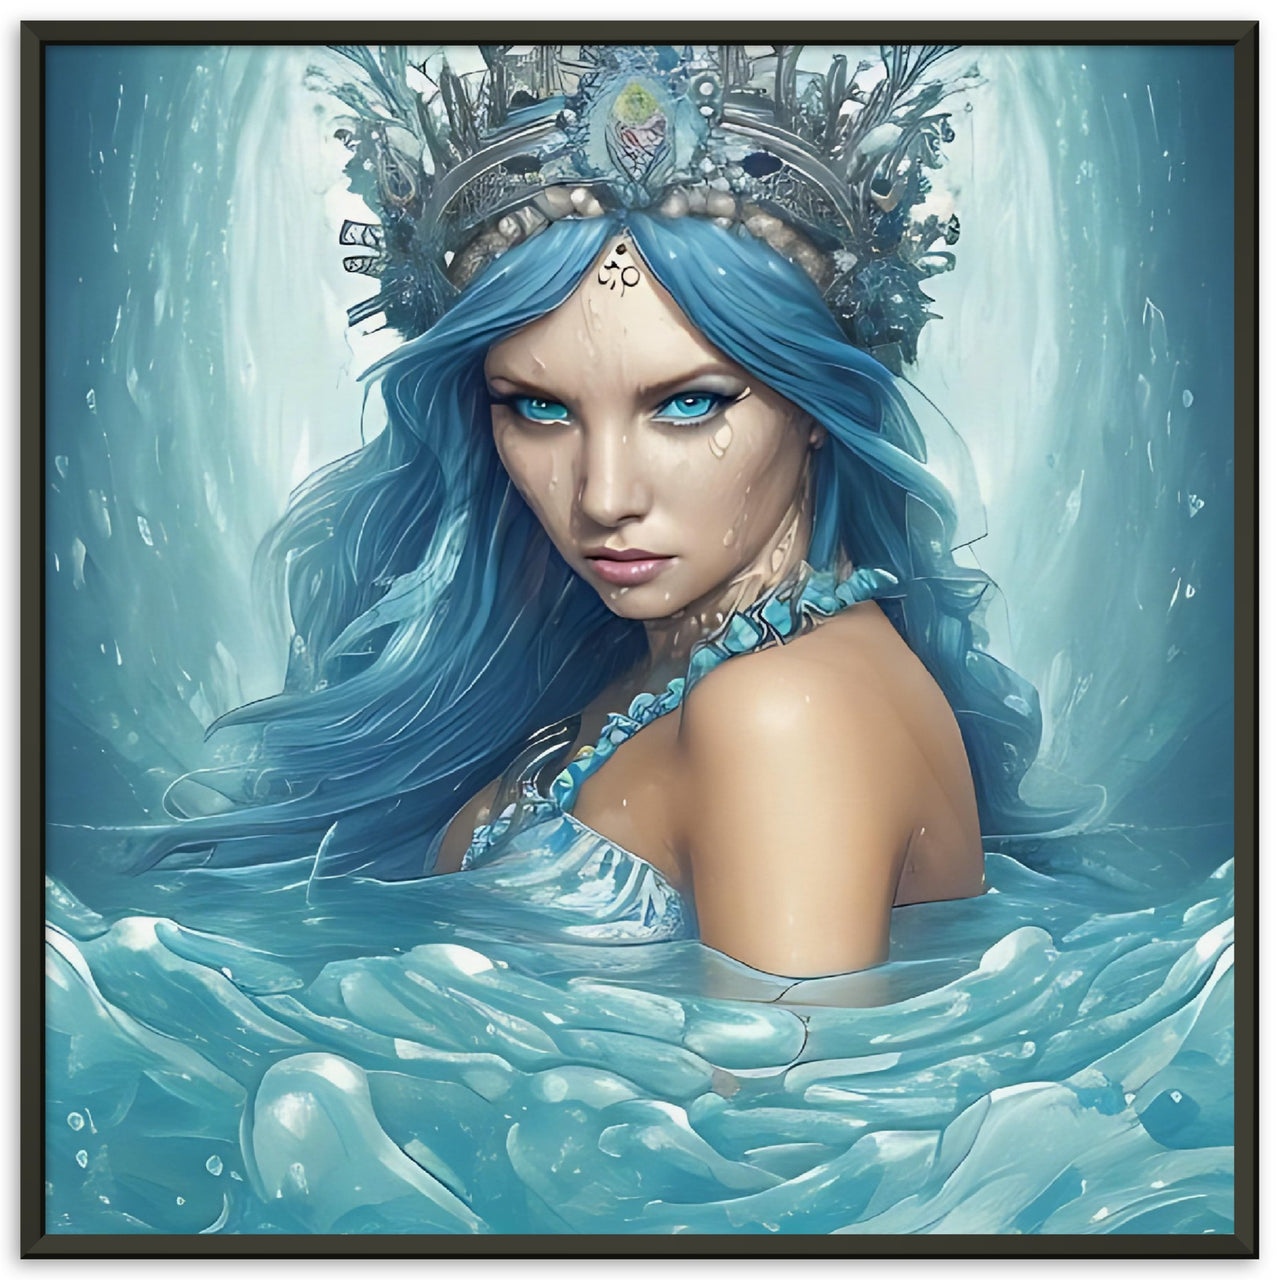 Affiche cadre métal - The Mermaid ŪA